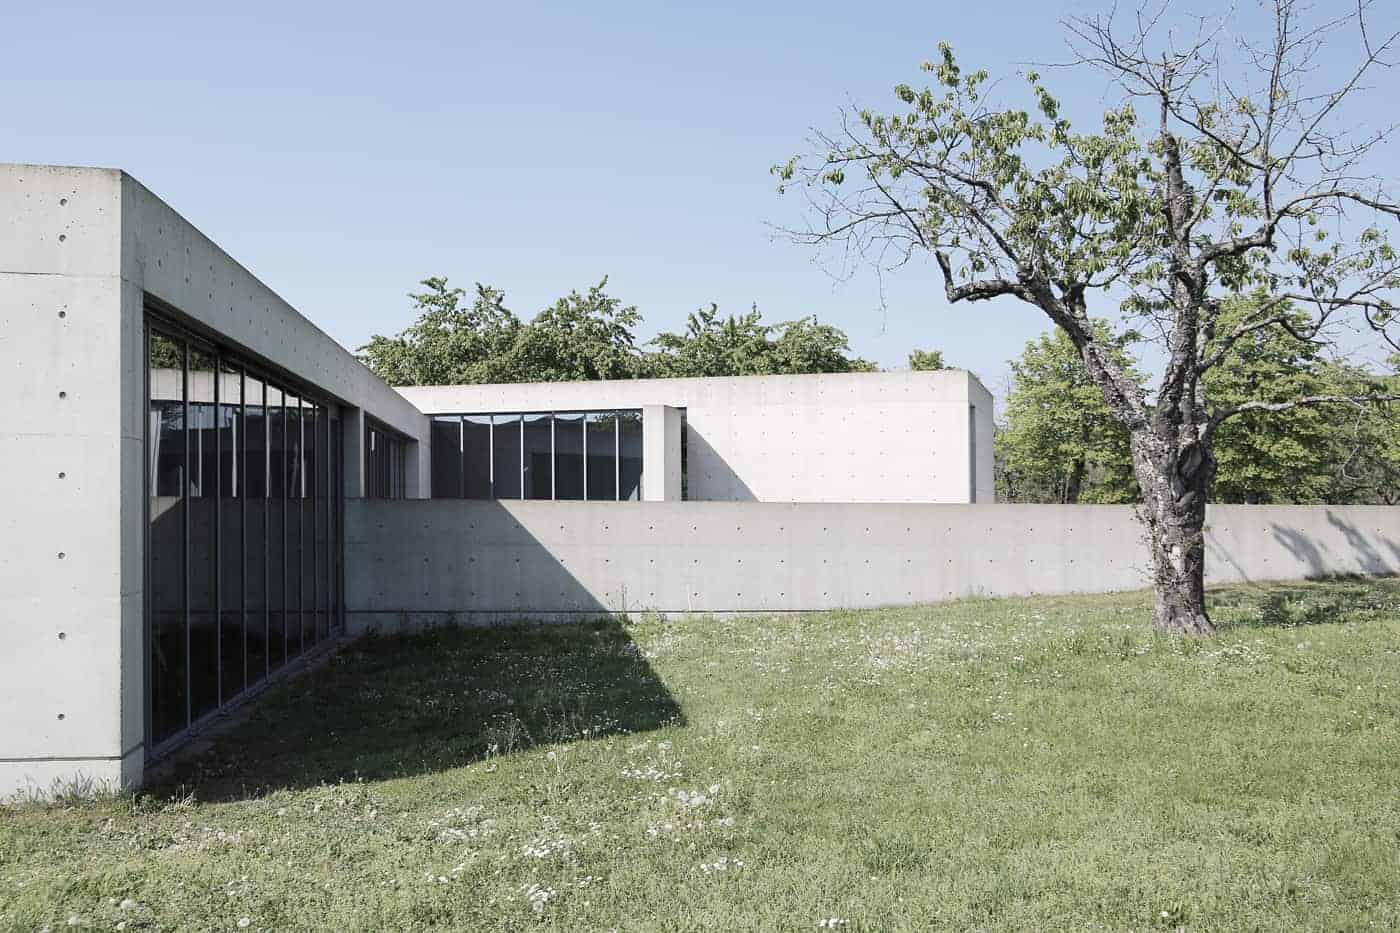 Vitra Conference Pavilion by Tadao Ando